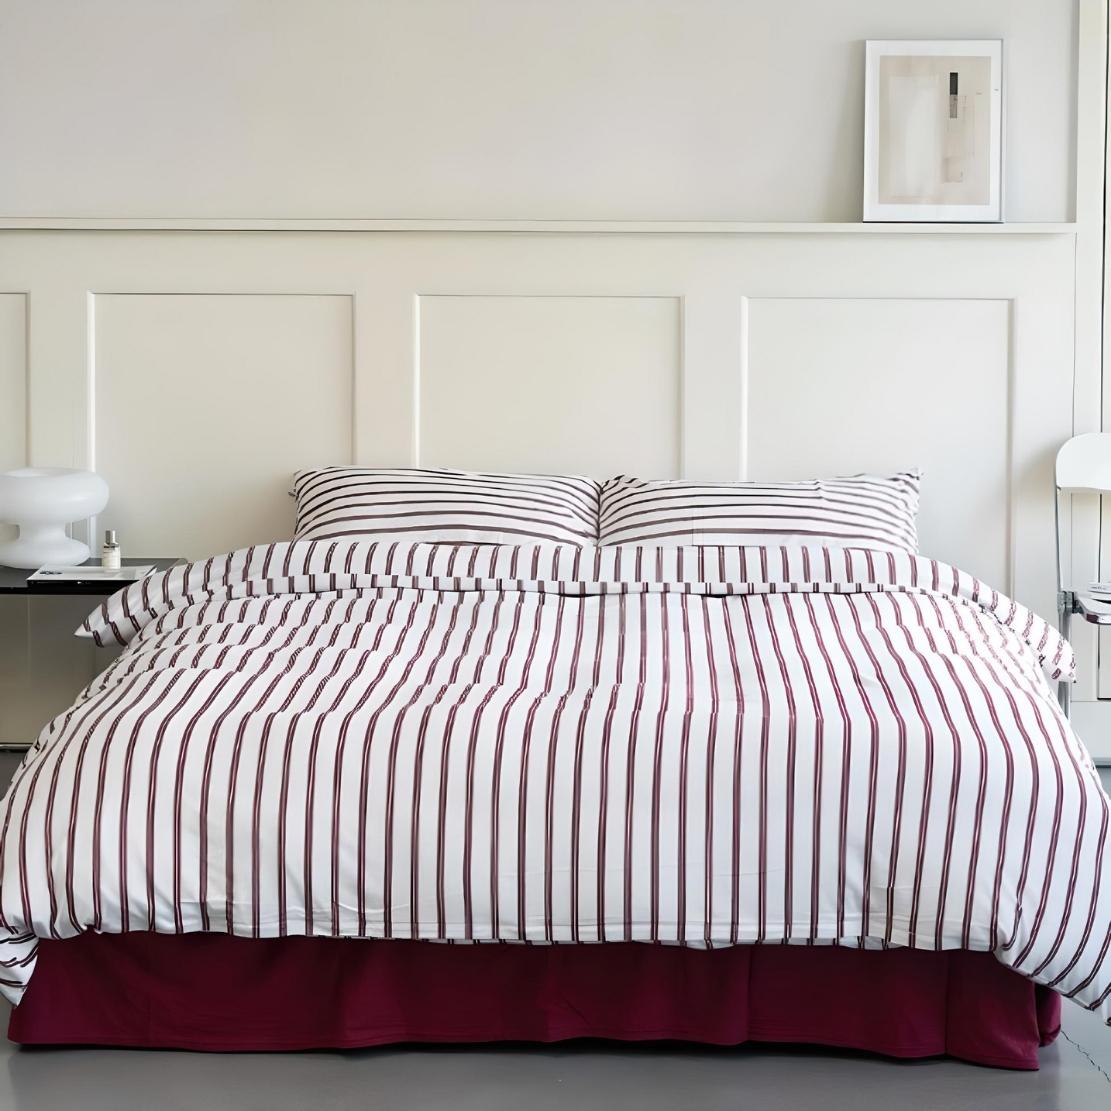 Red & white minimalist stripe bedding set